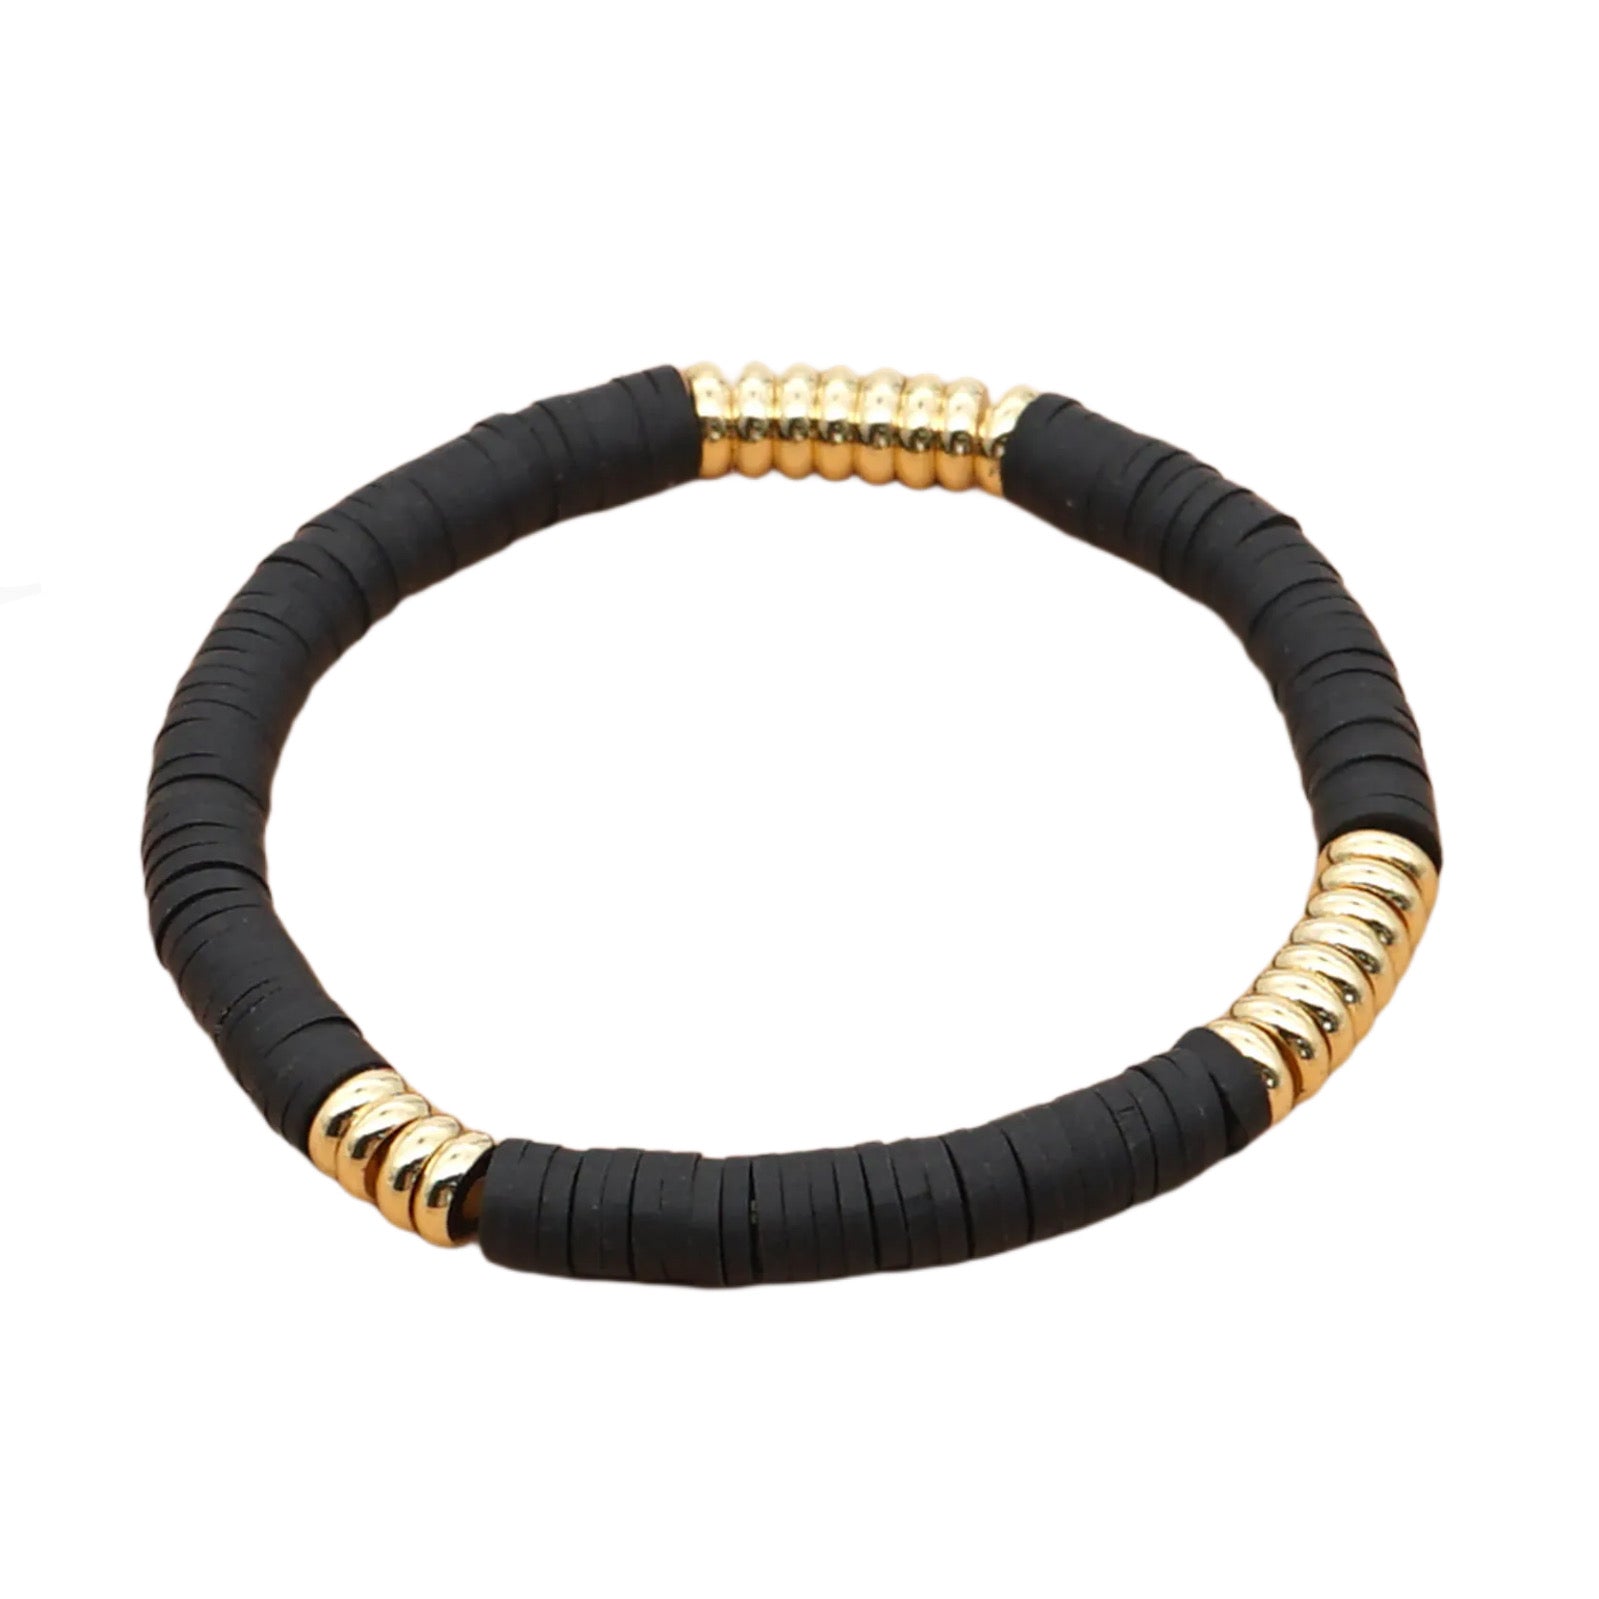 Black Rubber Wristband Bracelet with Gold Metal Plaque - Shema Yisrael |  aJudaica.com